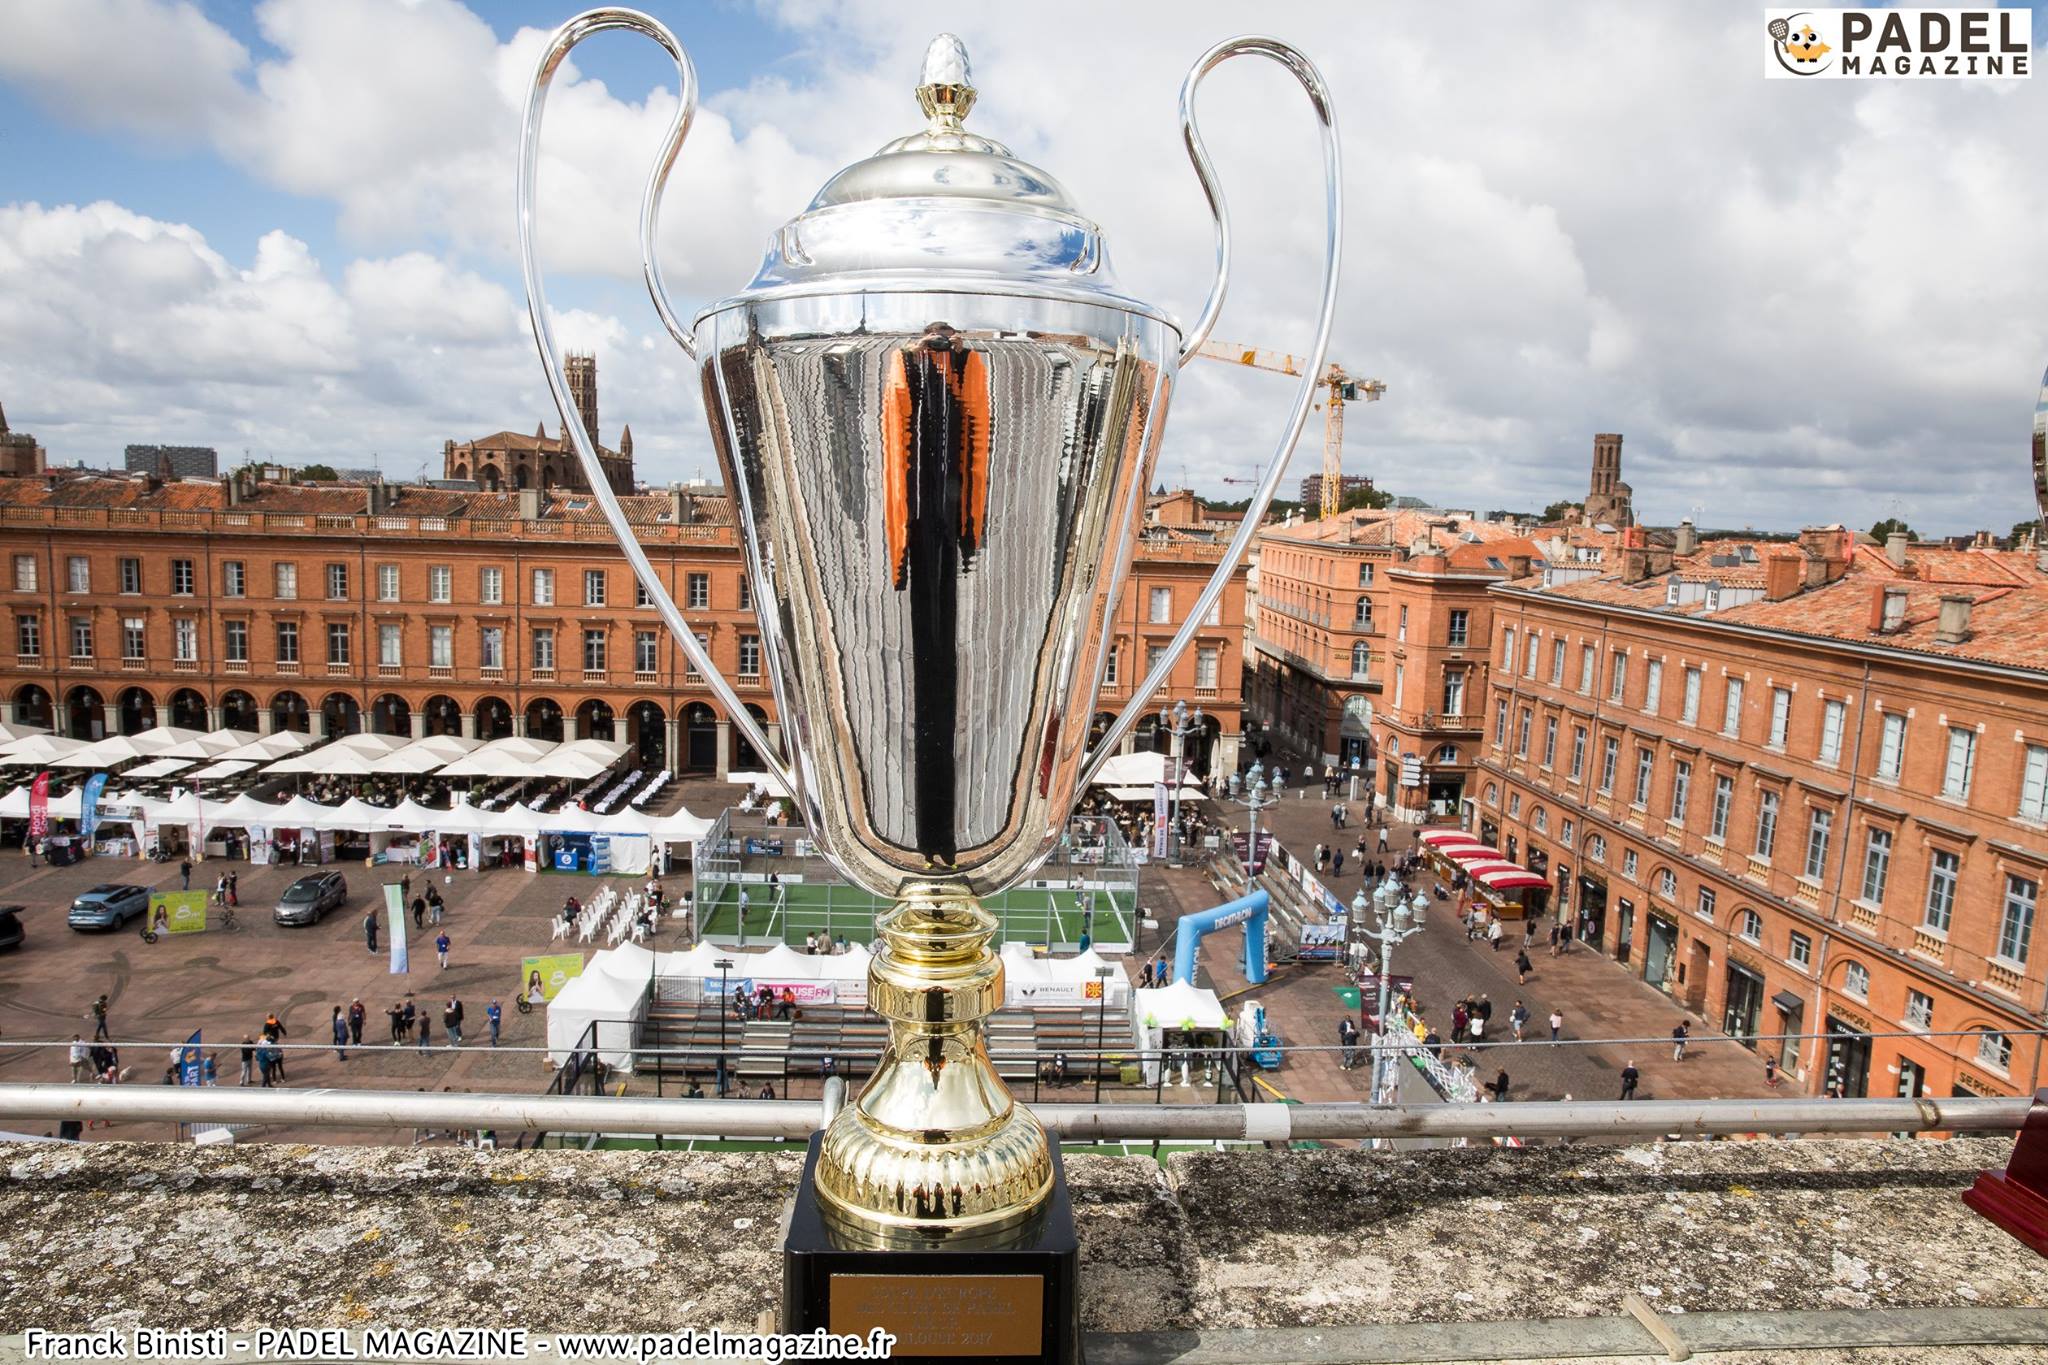 Association Européenne des Clubs de Padel présente la Coupe d’Europe des Clubs.